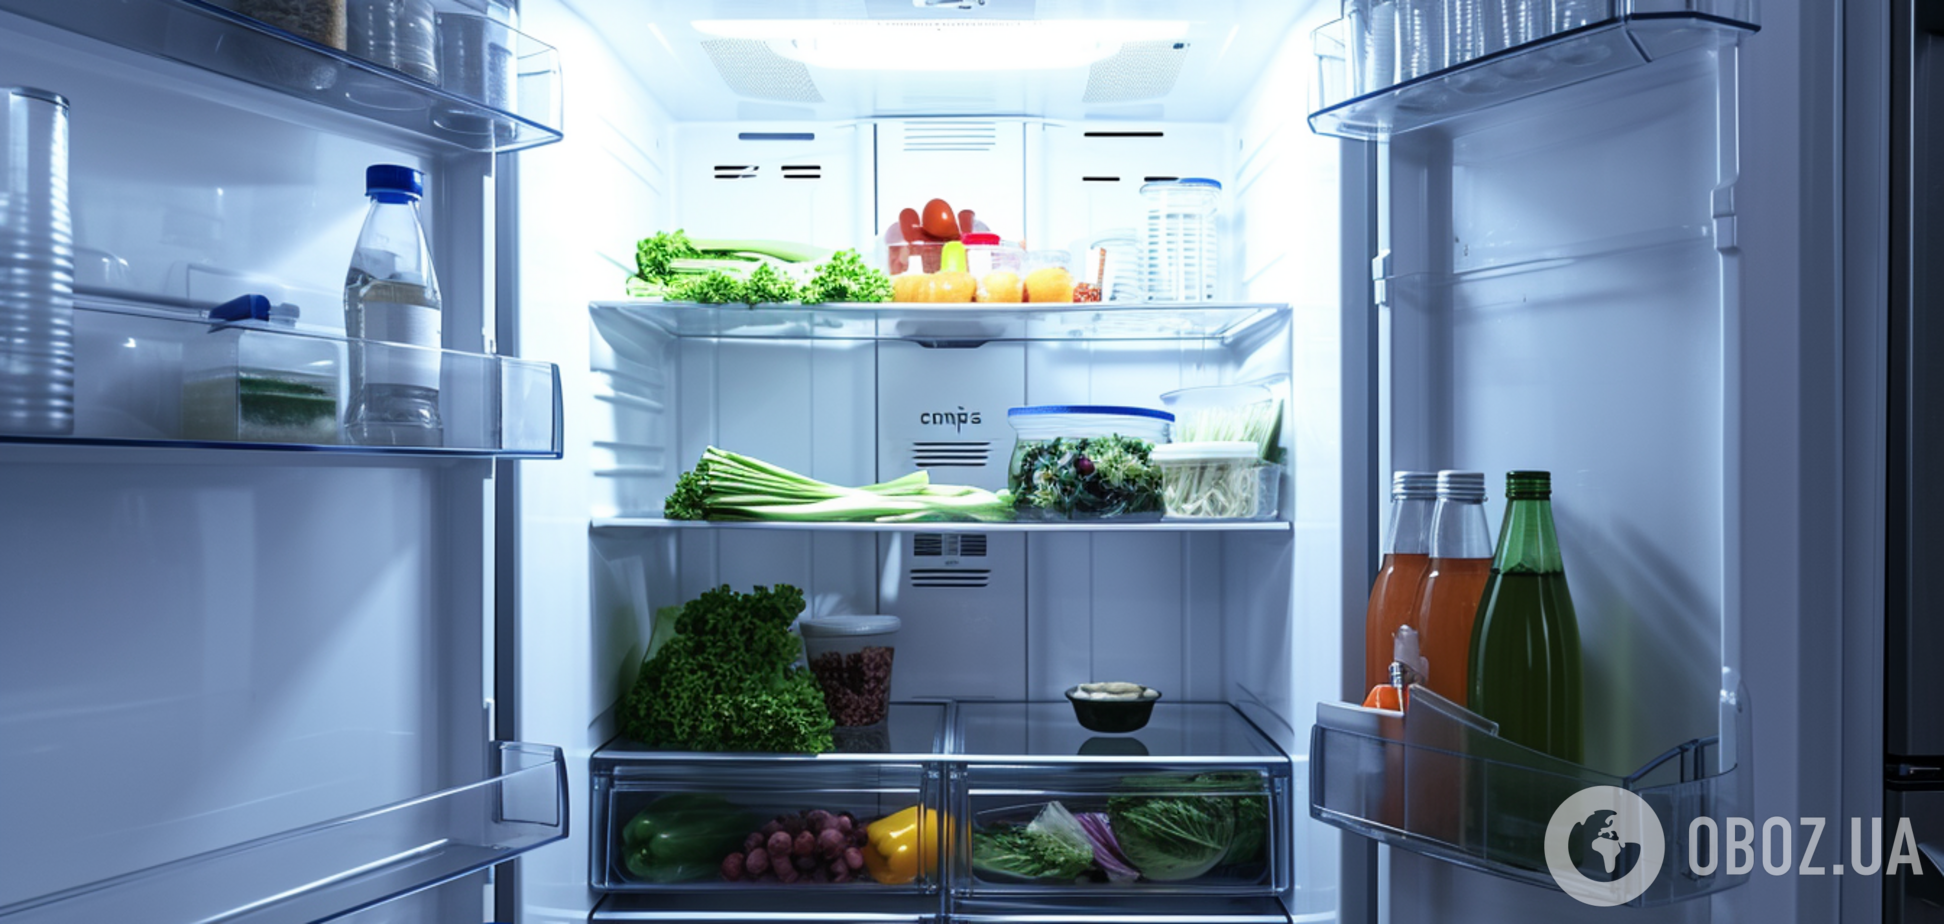 Холодильник буде ідеально чистим: всього два продукти допоможуть прибрати неприємний запах